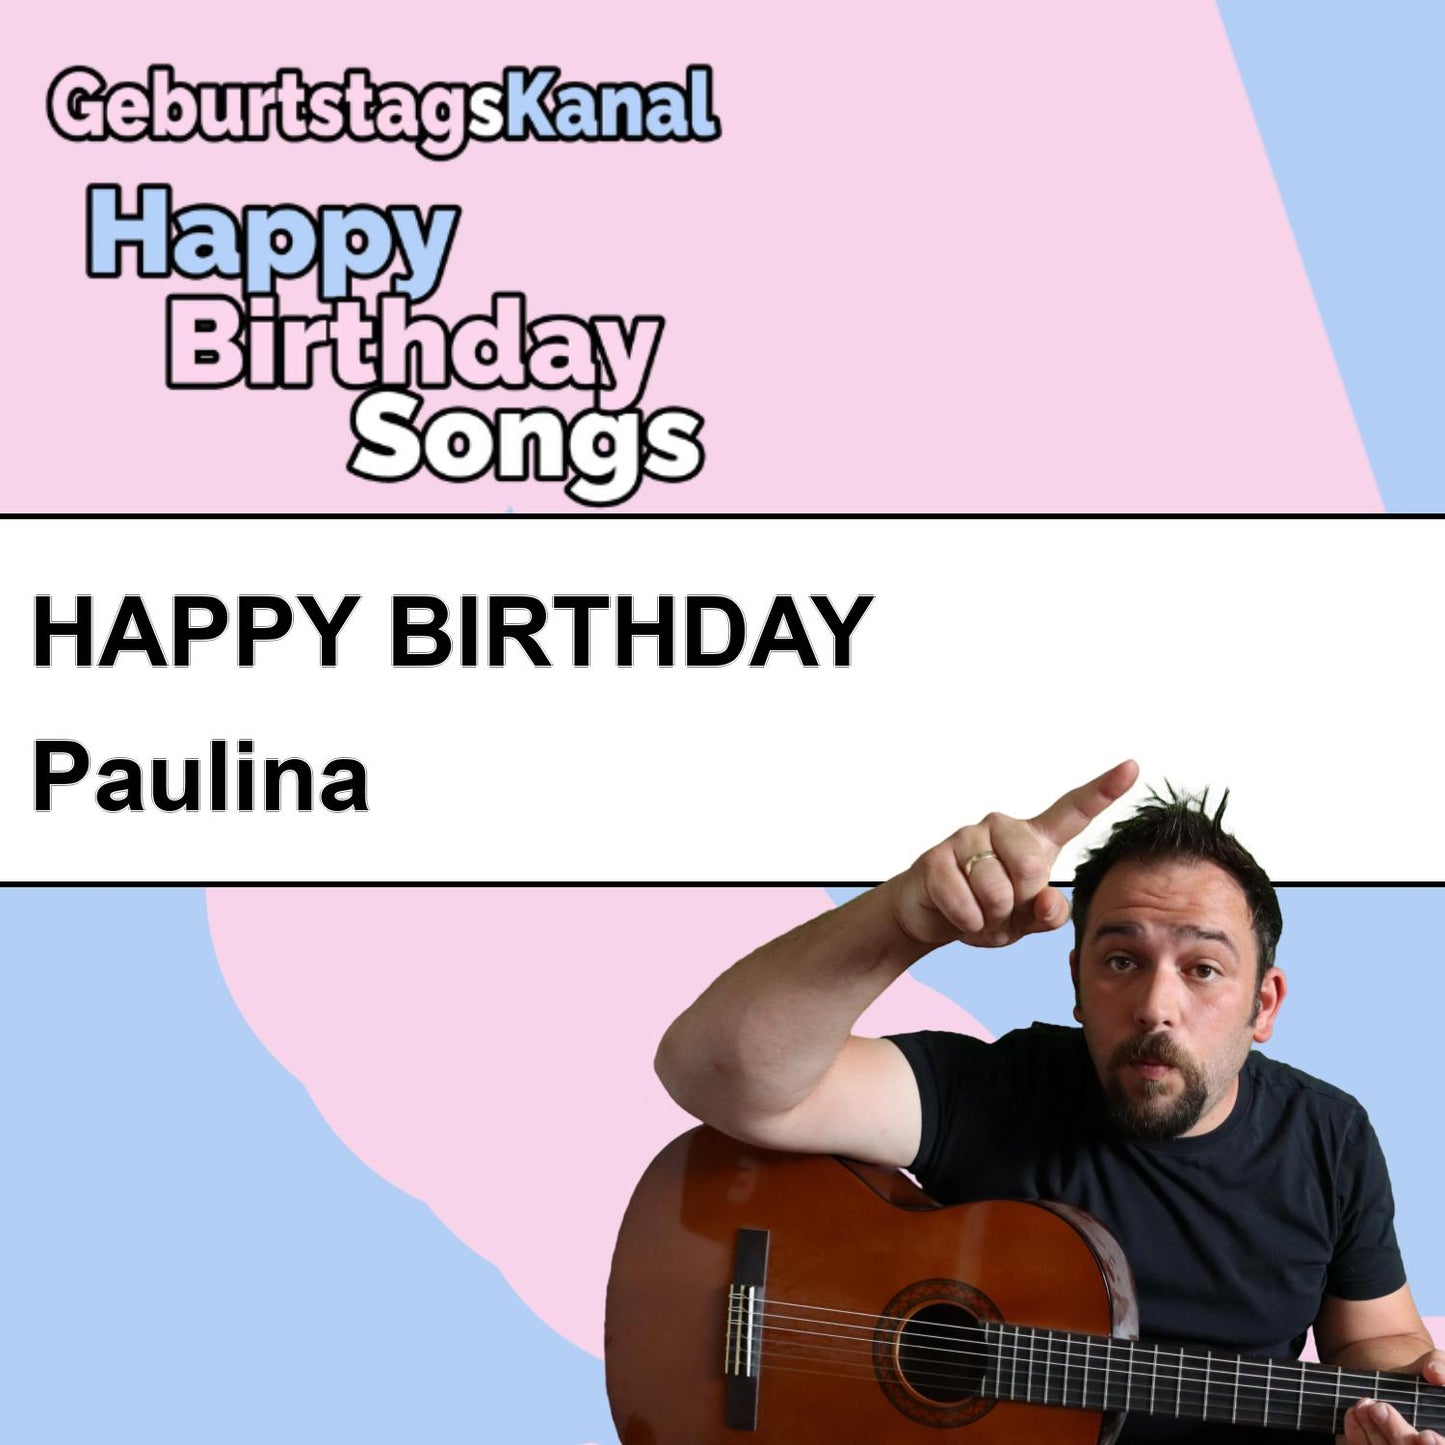 Produktbild Happy Birthday to you Paulina mit Wunschgrußbotschaft